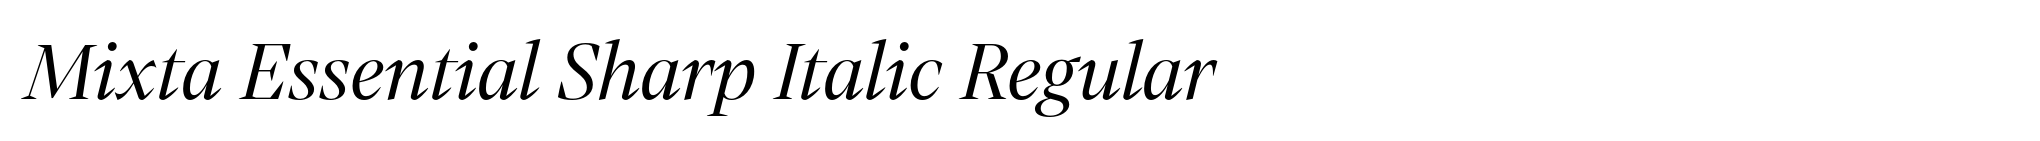 Mixta Essential Sharp Italic Regular image